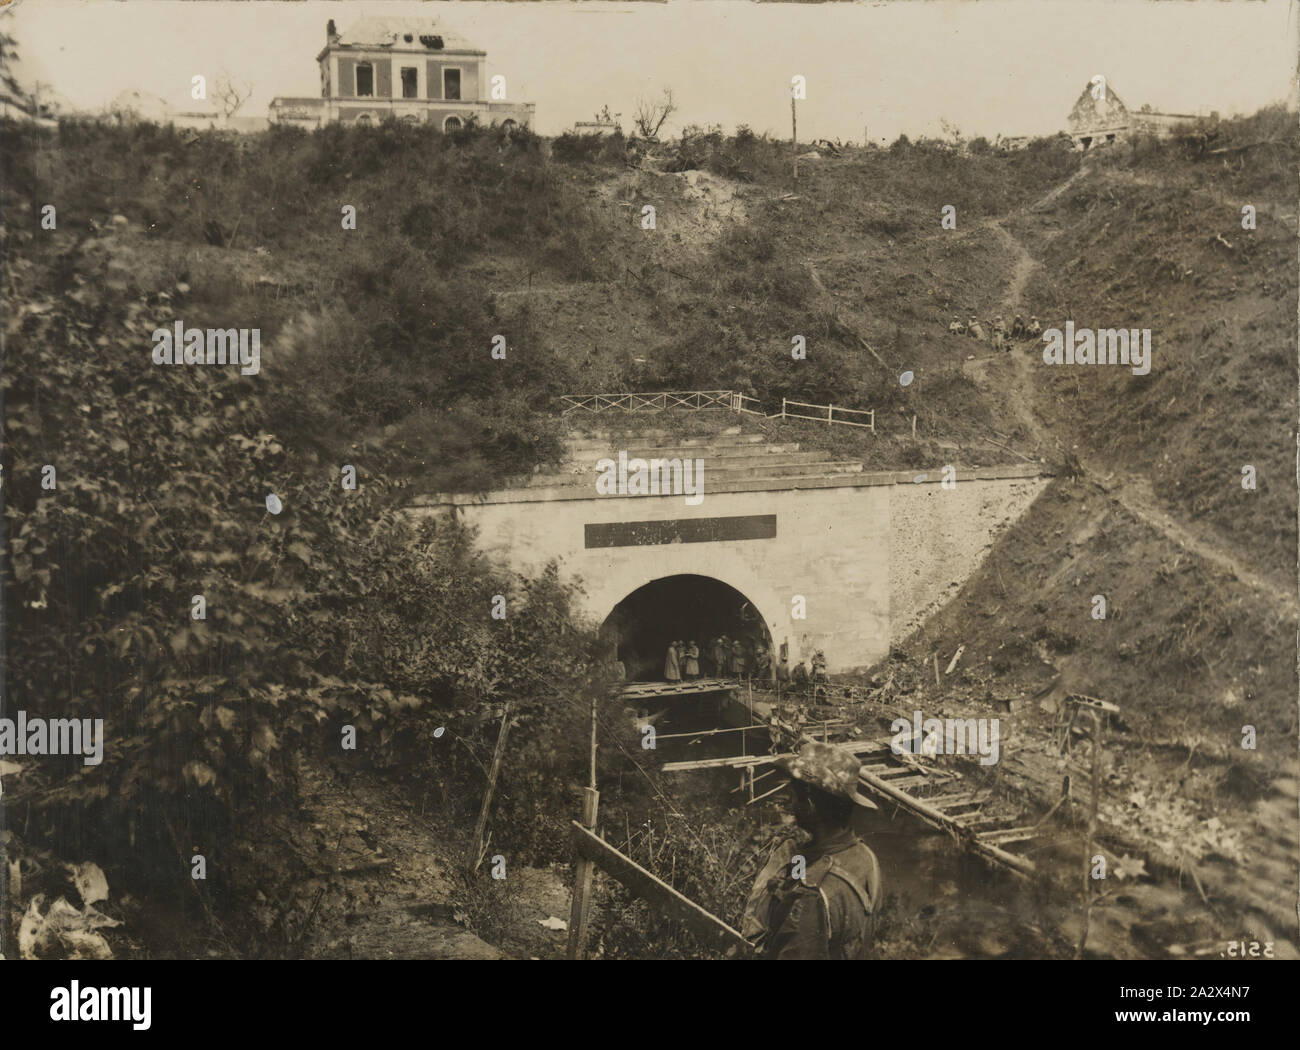 Foto - der Cenes aus Frankreich, Große Krieg', der Erste Weltkrieg, 1914-1918, Foto von Soldaten an einem Eingang zu einem Tunnel in Frankreich während des Ersten Weltkrieges Stockfoto